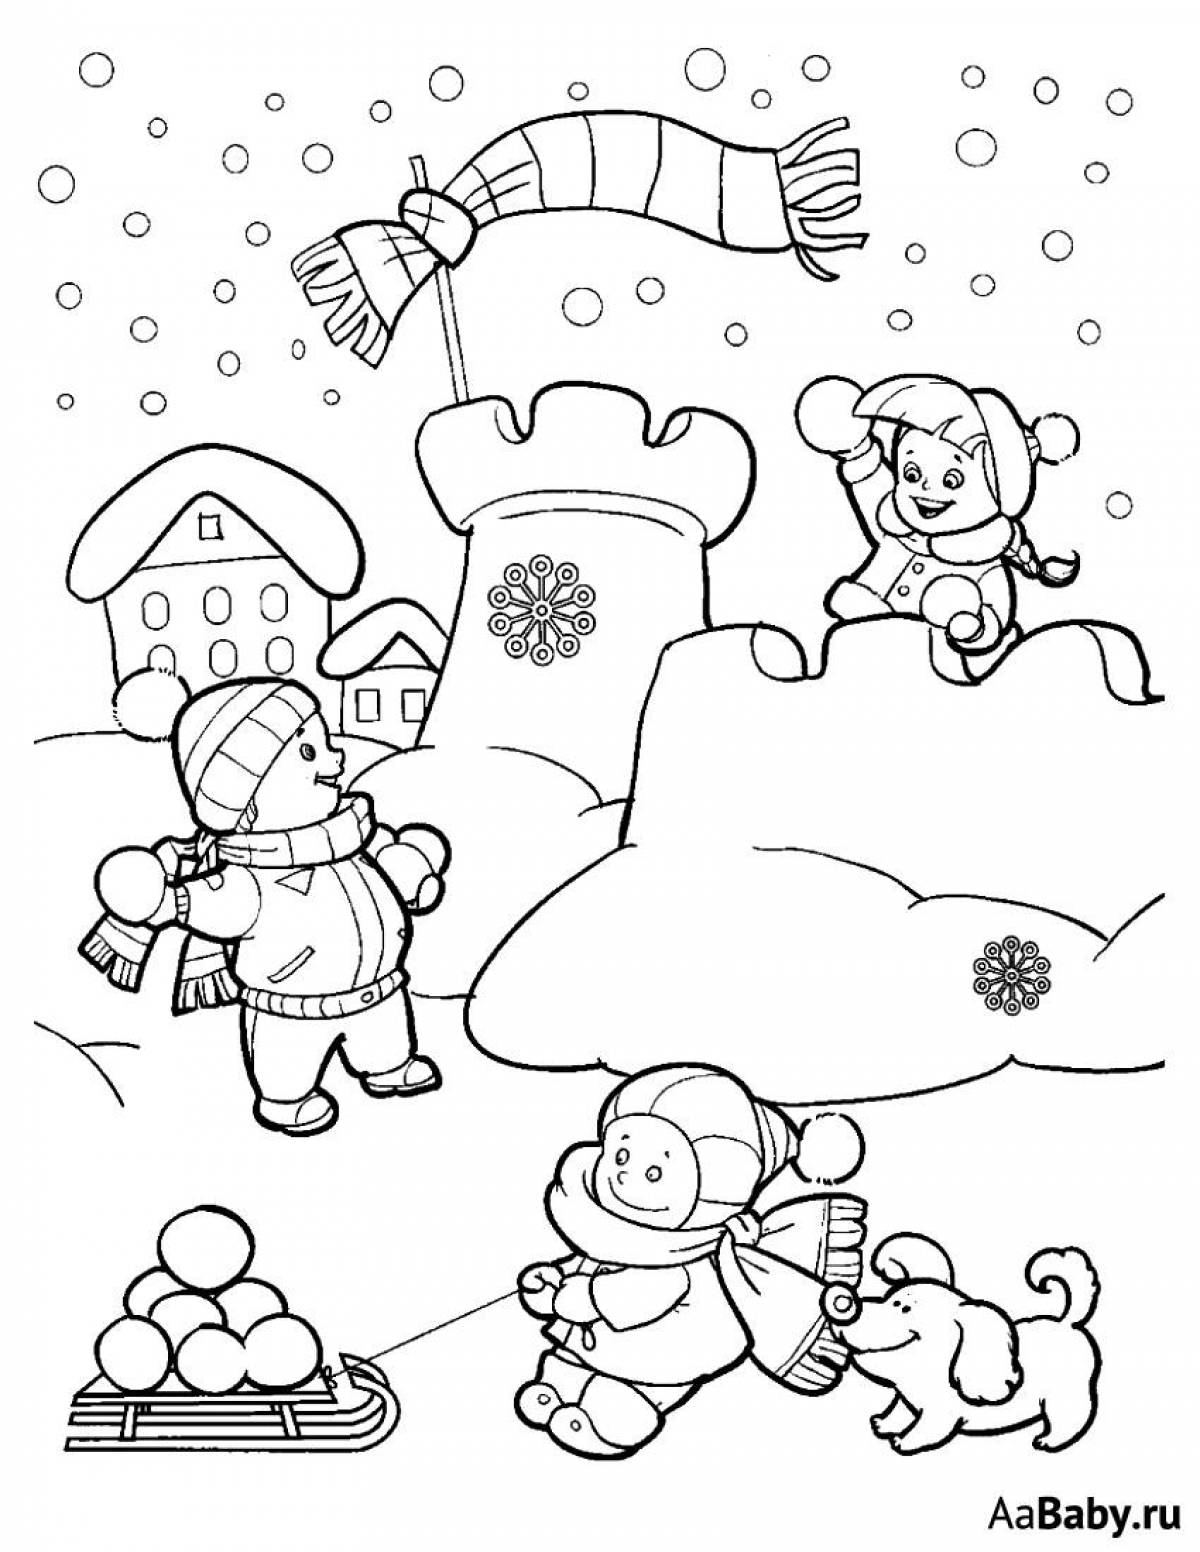 Игривая зимняя раскраска для детей